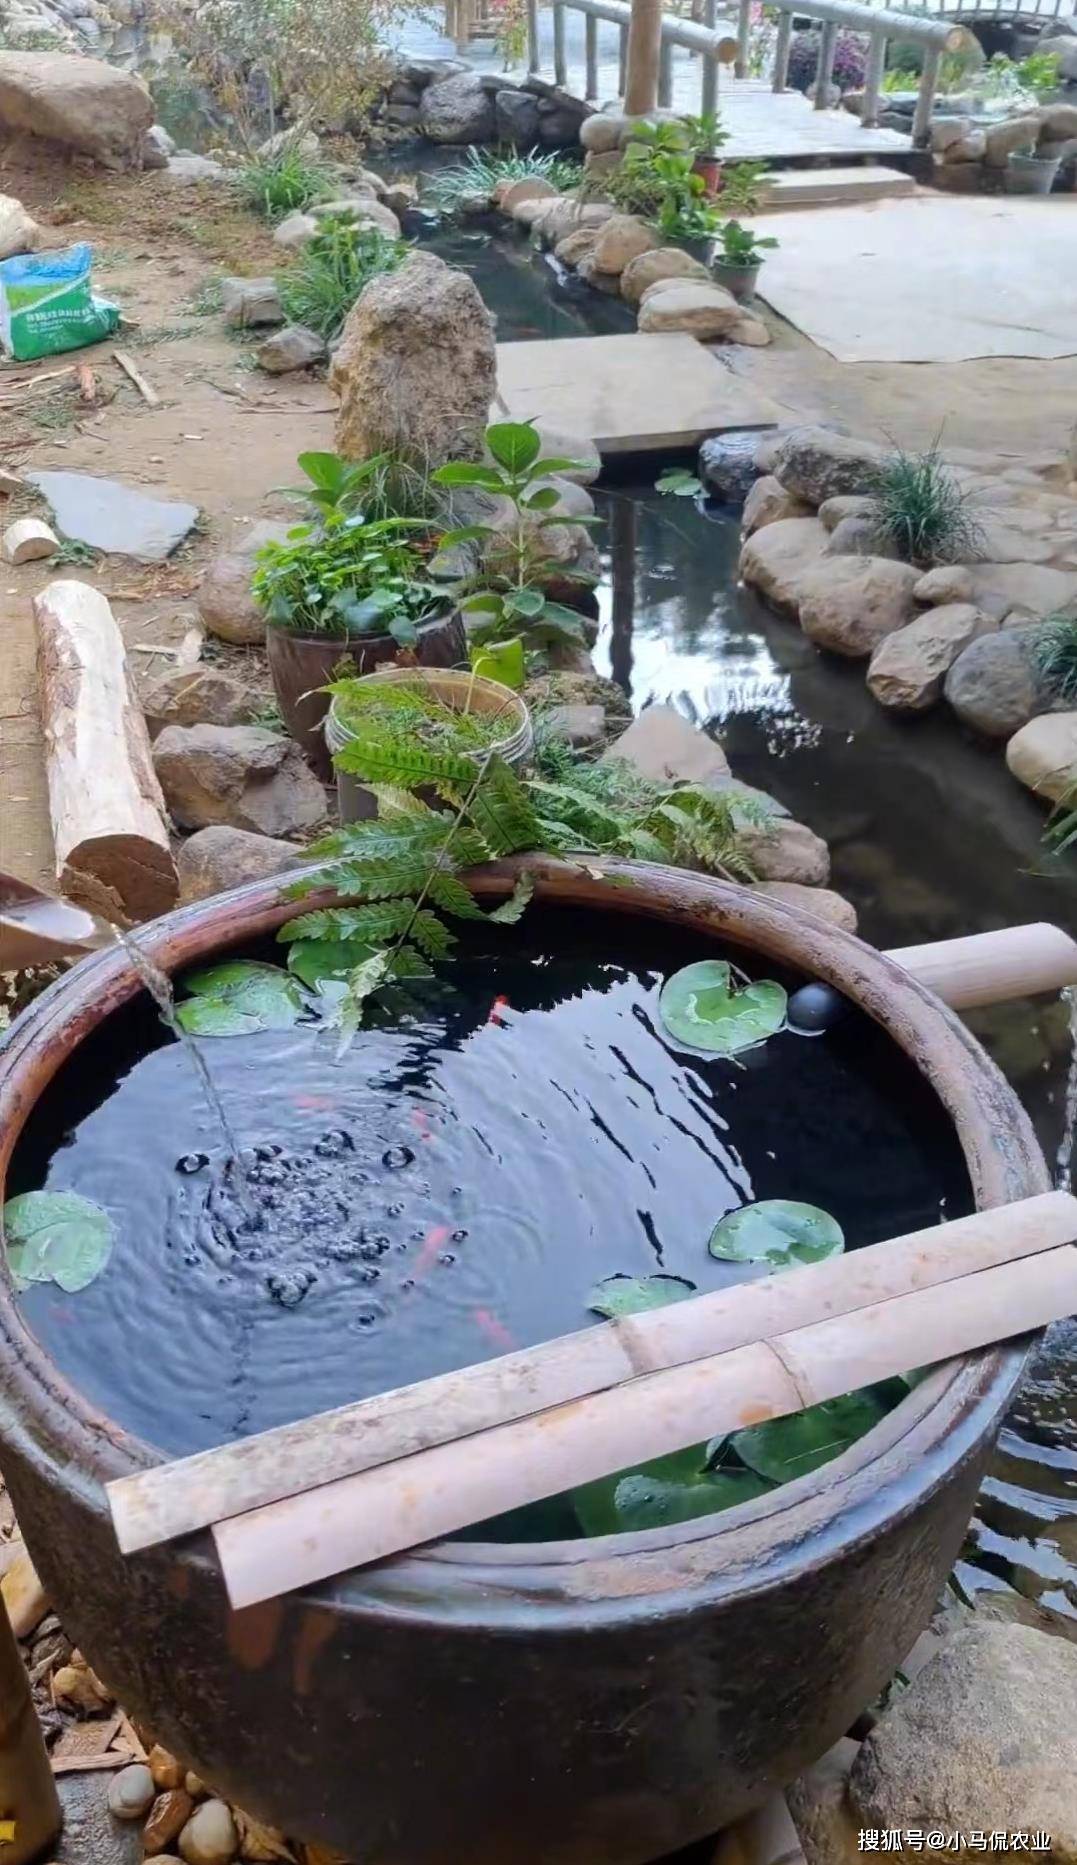 小哥院中8个竹筒造生态鱼缸,下养鱼上种菜,流水瀑布材料全靠捡